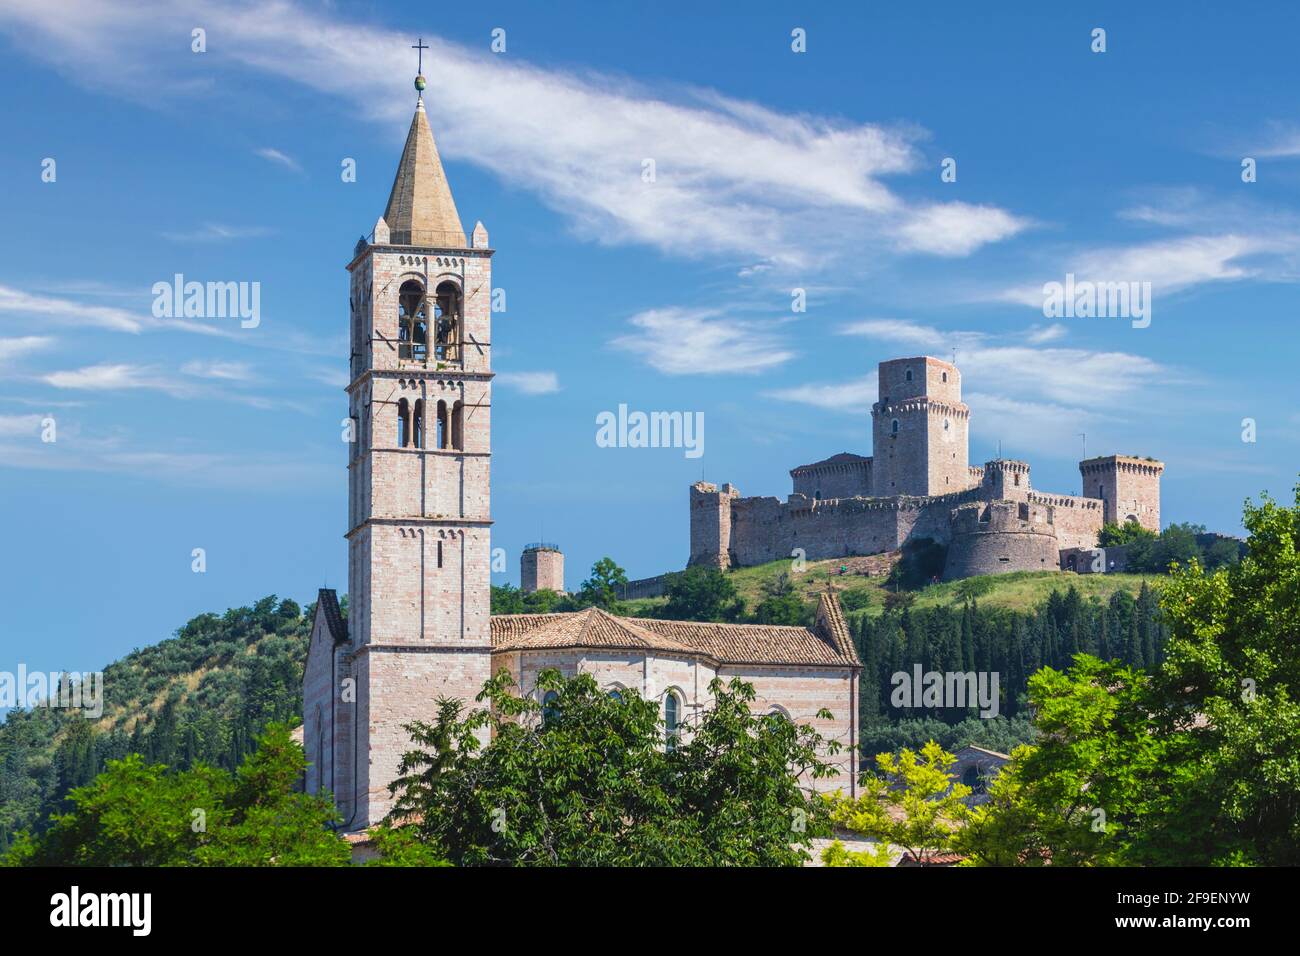 Assise, province de Pérouse, Ombrie, Italie. La basilique de Santa Chiara (ou Saint Clare) avec la forteresse du XIIe siècle de Rocca Maggiore derrière. Banque D'Images